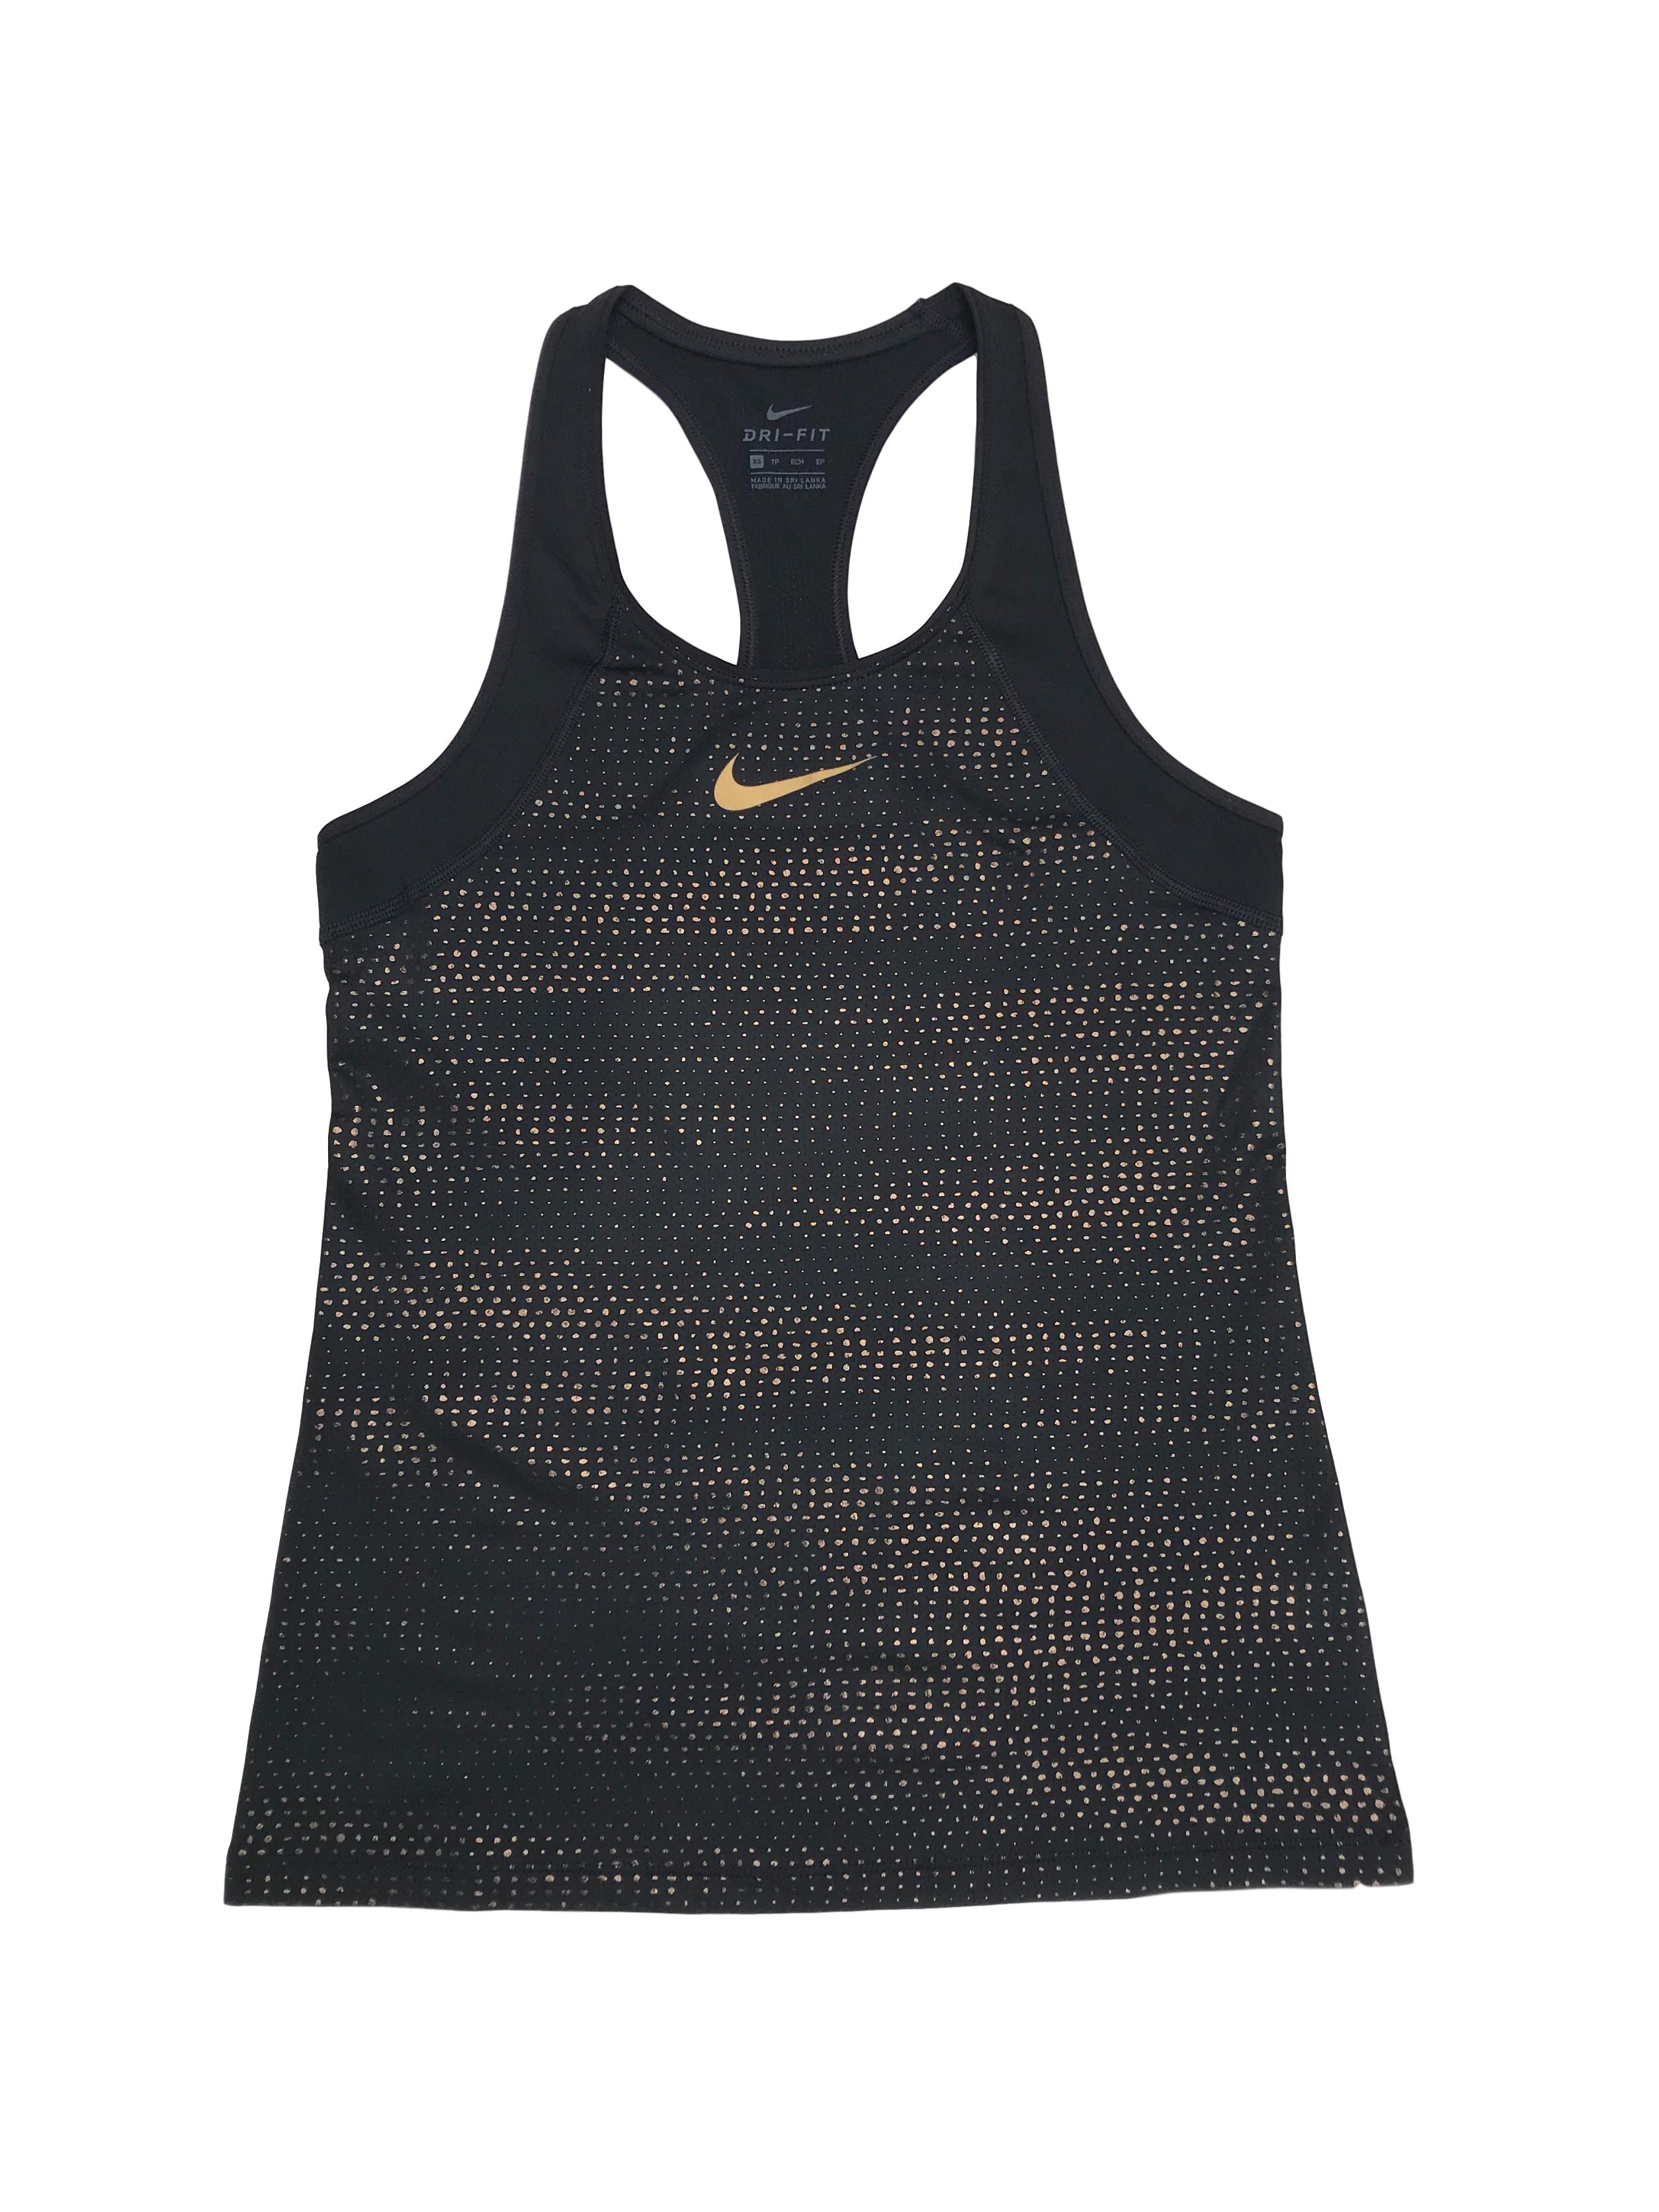 Top deportivo Nike, espalda olímpica, negro con detalles dorados